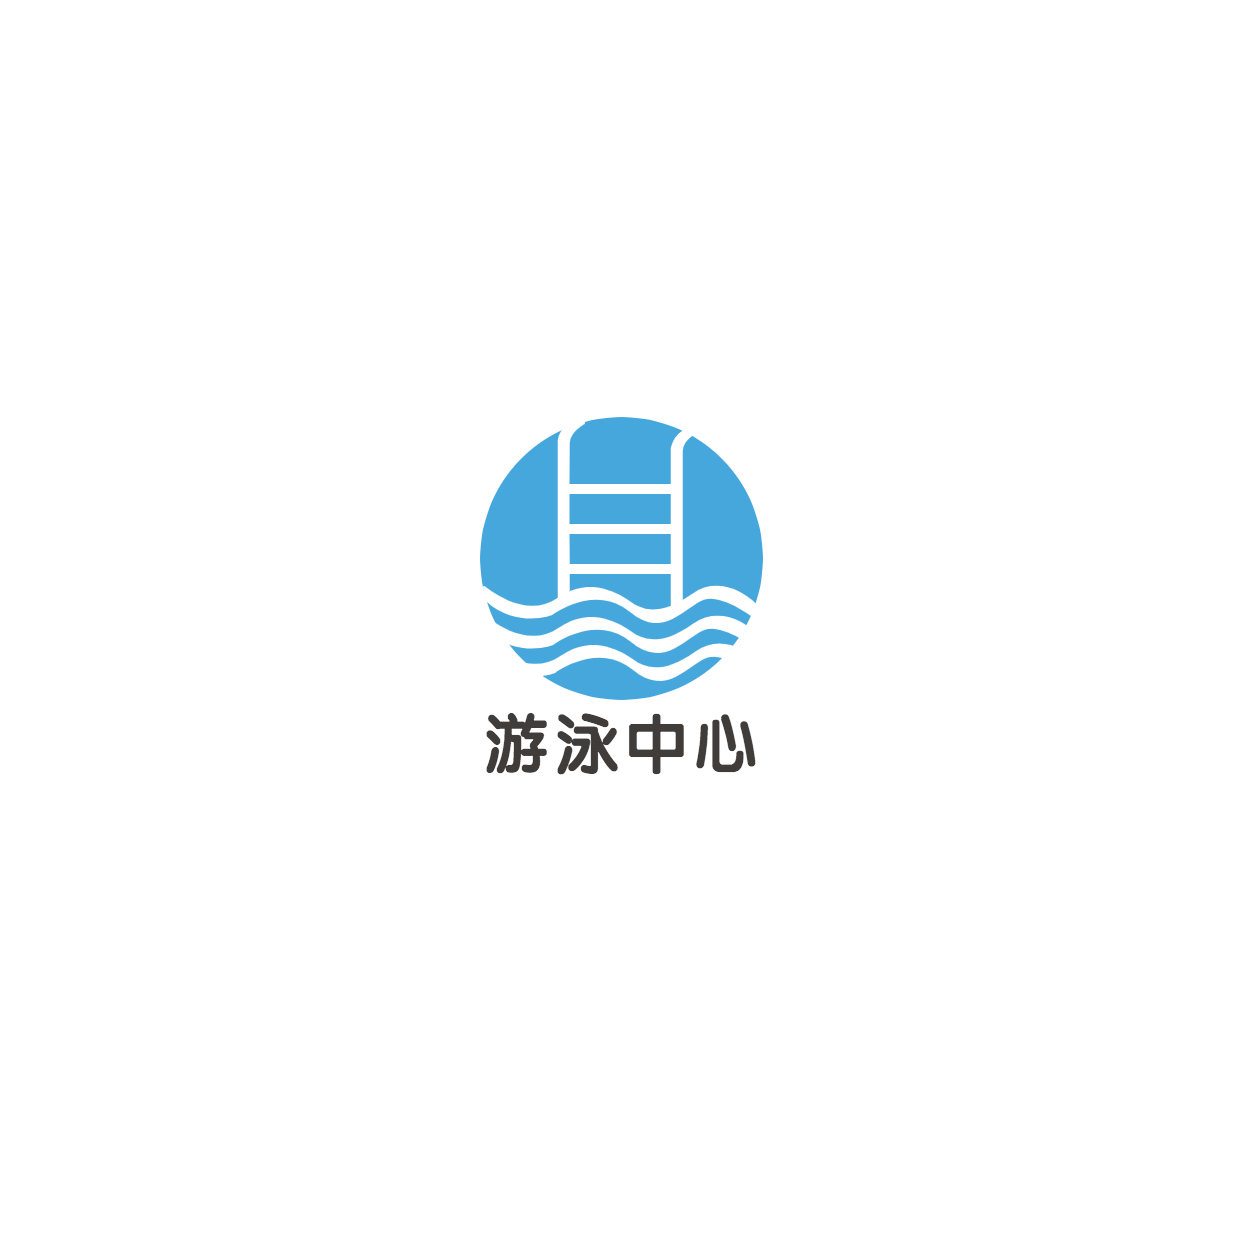 游泳中心培训手绘头像logo预览效果